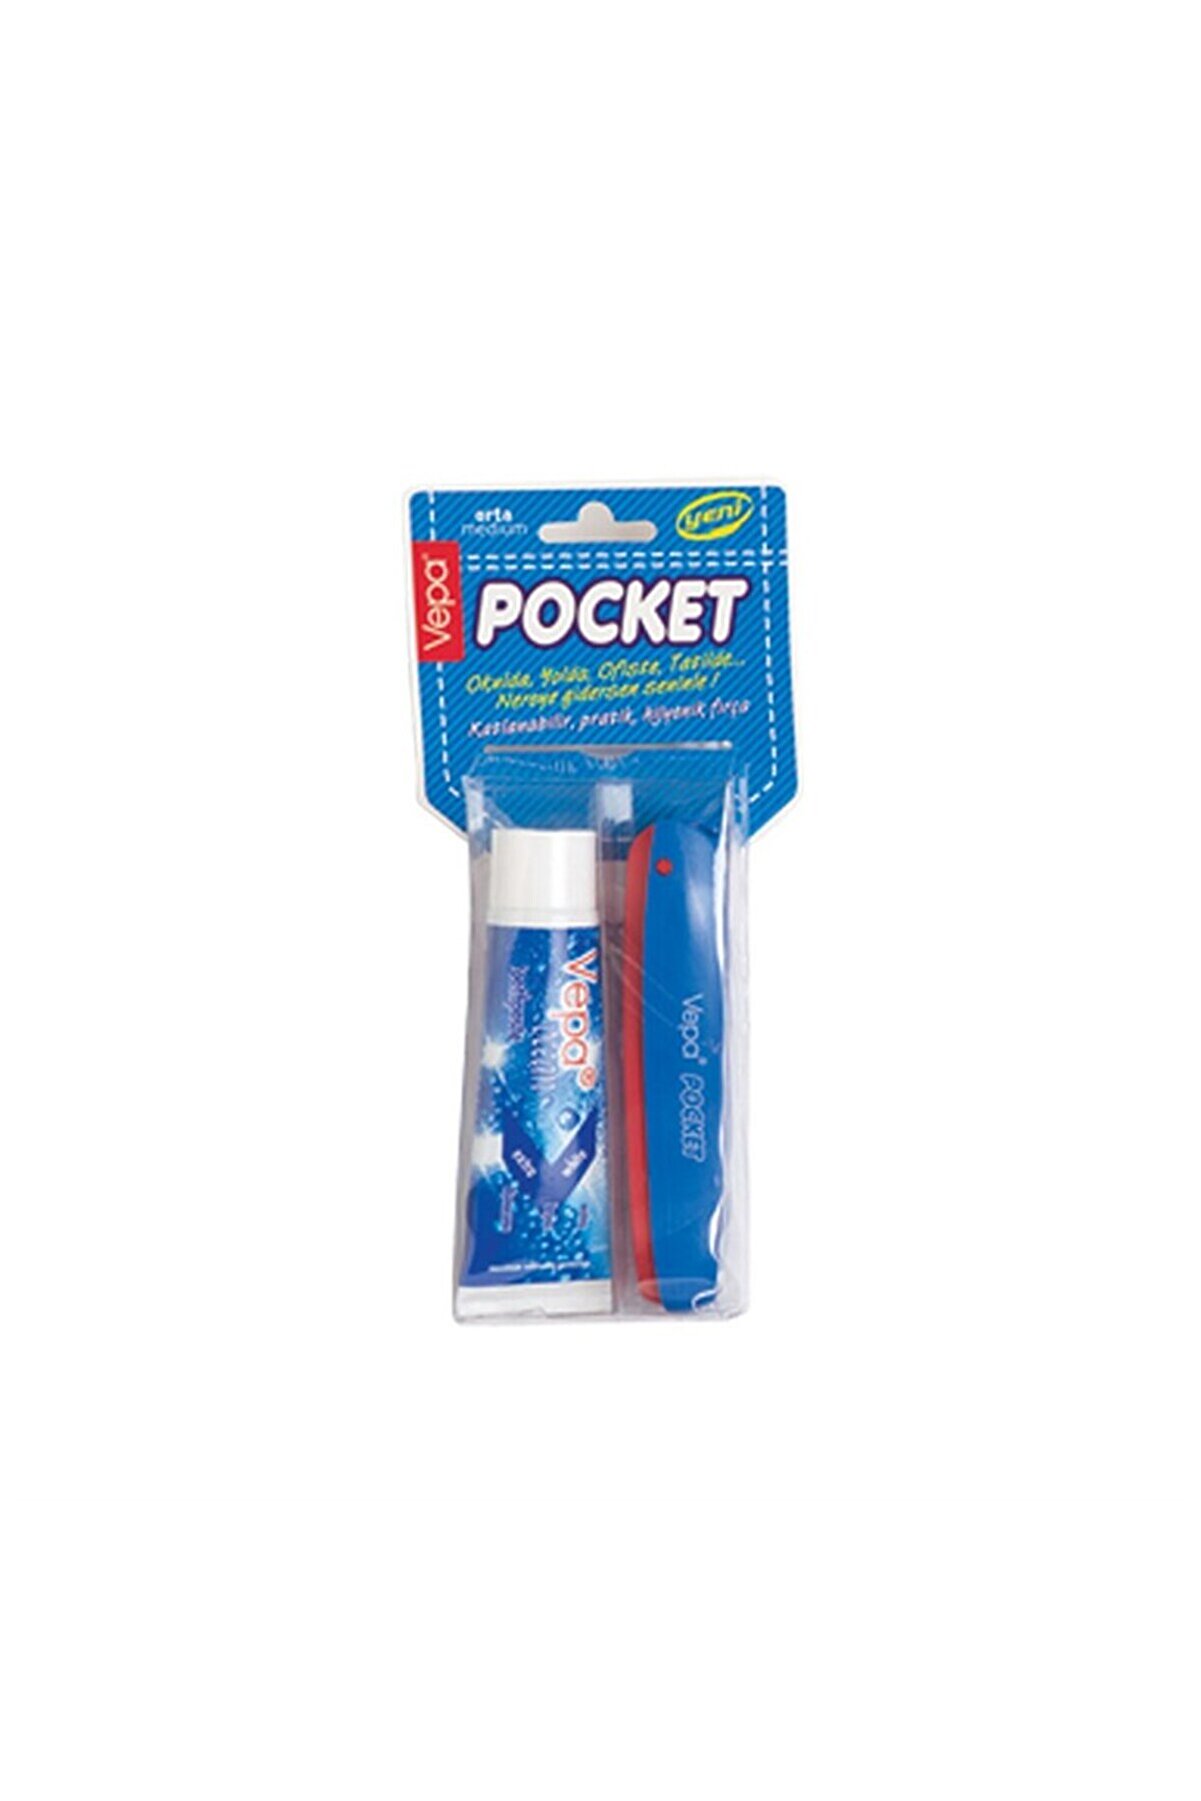 Vepa Pocket Diş Fırçası Ve Diş Macunu 20 ml Seyahat Tipi